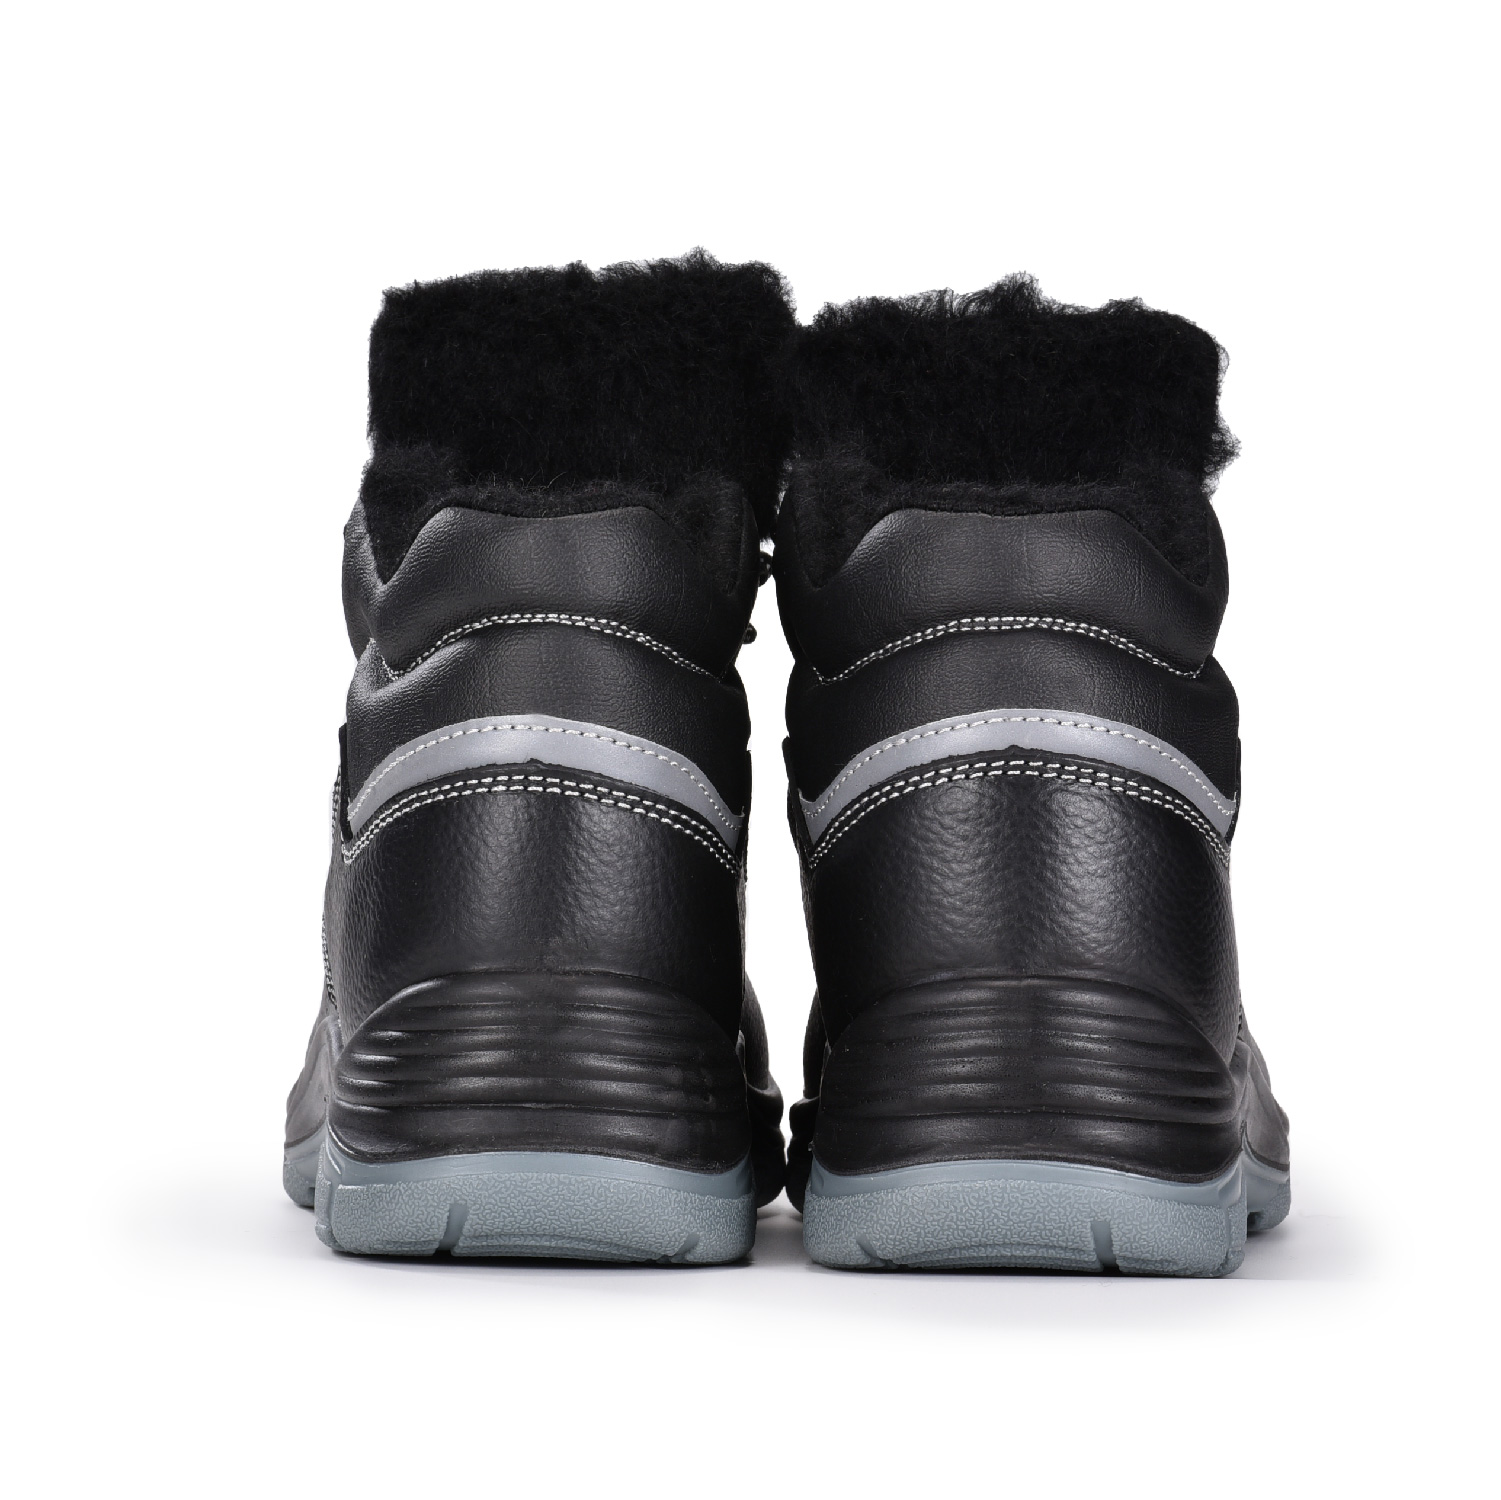 Утепленные рабочие ботинки для холодной погоды на меховой подкладке для зимнего склада с морозильной камерой M-8550 Fur